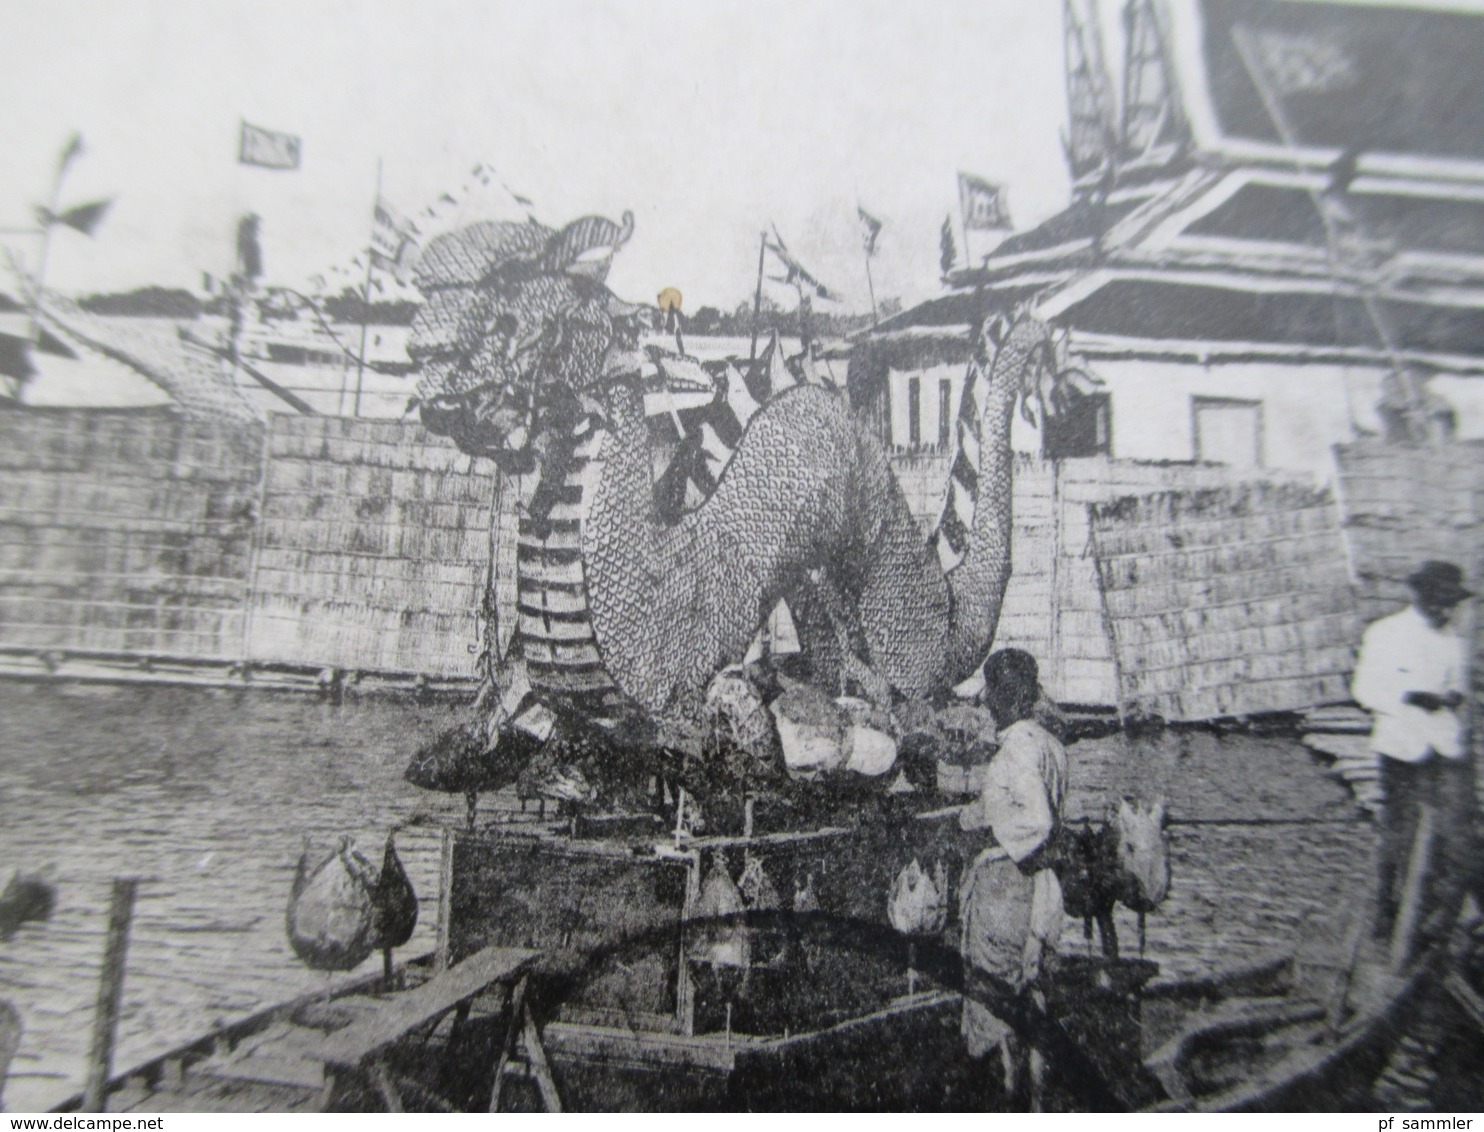 Kambodscha Cambodge 1910 AK Phnom Penh Drachen Figur Auf Einem Boot Stempel Tonkin Nach Nürnberg Gesendet - Cambodja